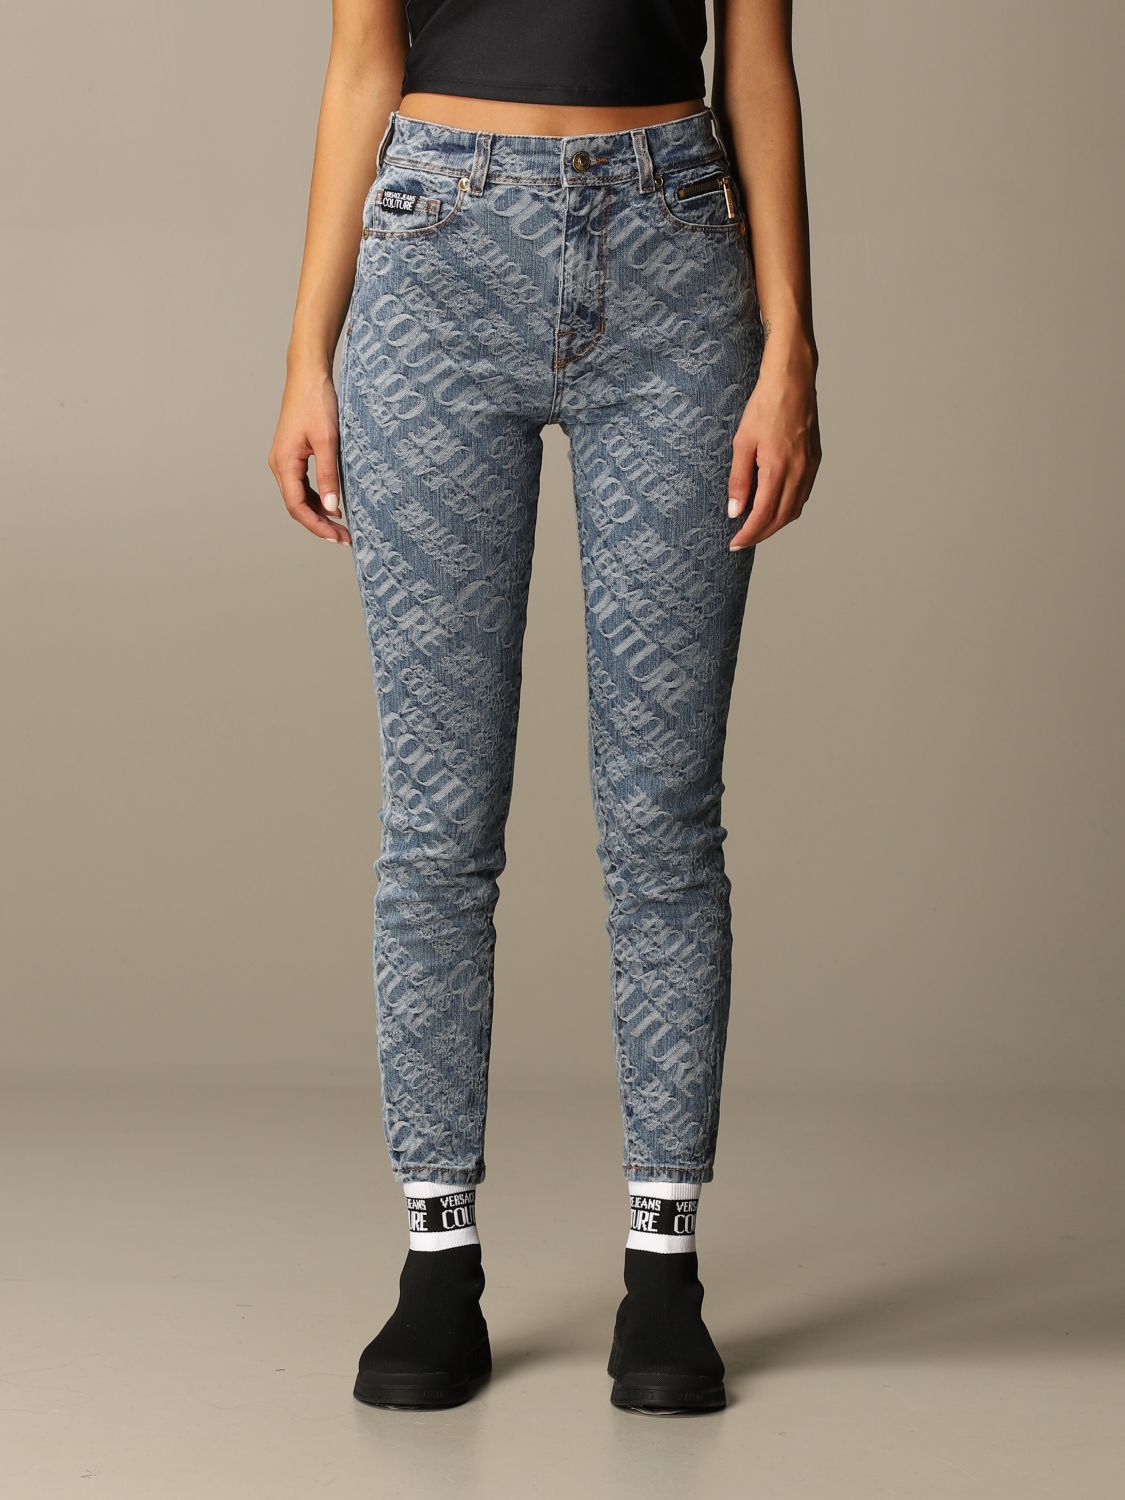 grey versace jeans